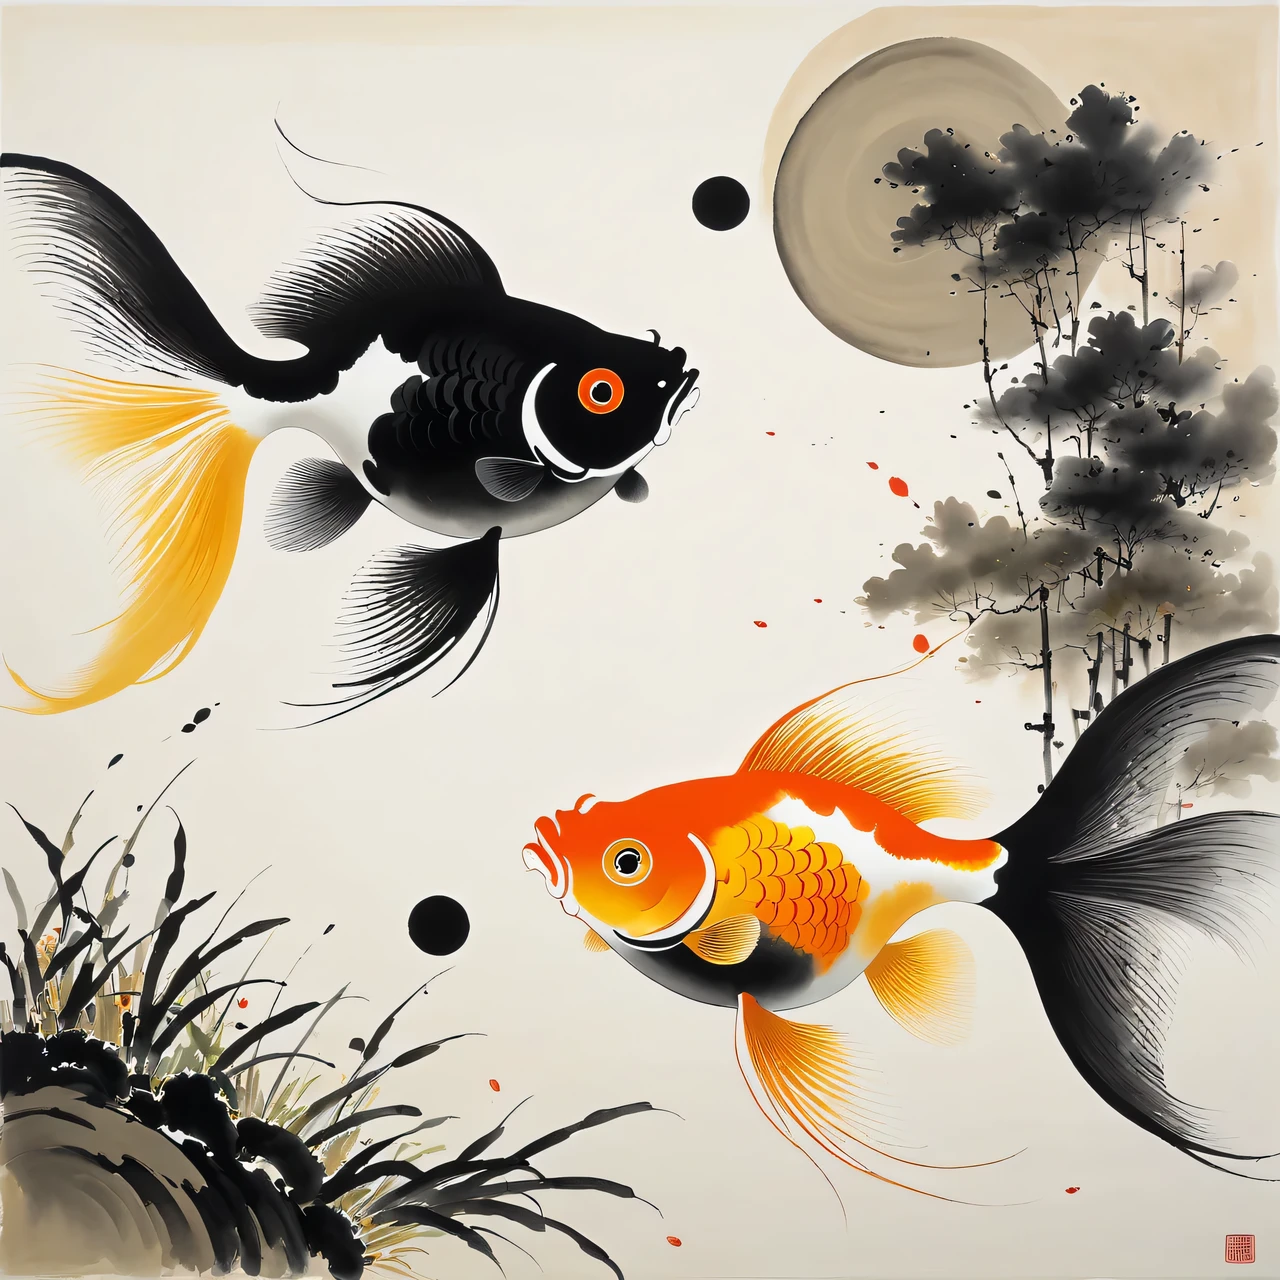 อู๋ กวนจง วาดภาพ, ภาพวาดแสดงให้เห็นปลาทองสองตัวในสระน้ำโดยมีพื้นหลังเป็นสัญลักษณ์หยินและหยาง, สอดคล้องกับสไตล์ของ Wu Guanzhong อย่างสมบูรณ์, การผสมผสานเทคนิคการวาดภาพด้วยหมึกจีนแบบดั้งเดิมเข้ากับแนวคิดการวาดภาพแบบตะวันตก, เอฟเฟ็กต์ภาพที่เป็นเอกลักษณ์โดยใช้สีและเส้น, จานสีสีดำและสีทอง